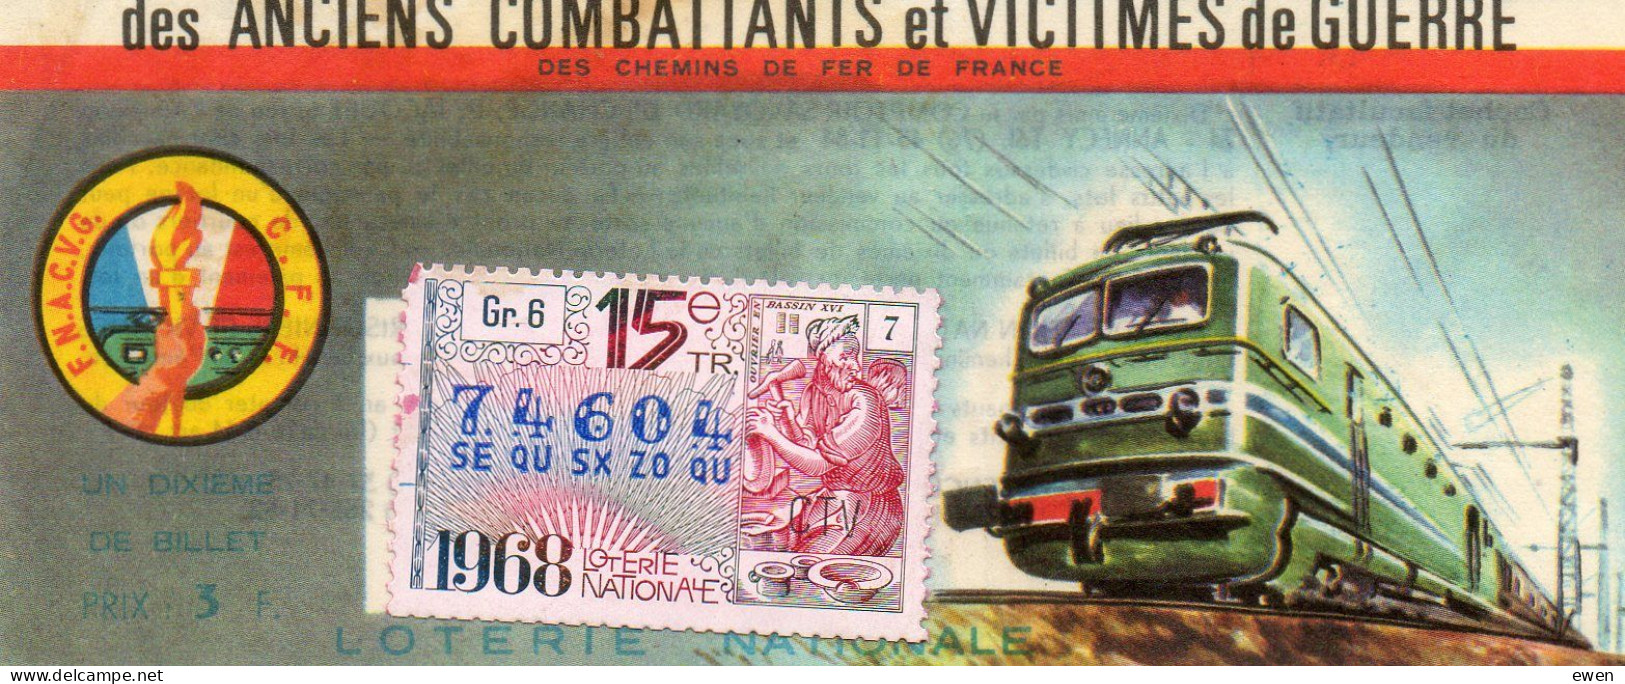 Billet Loterie Nationale Pour Victimes De Guerre. Dessin De Locomotive. 1968. - Loterijbiljetten